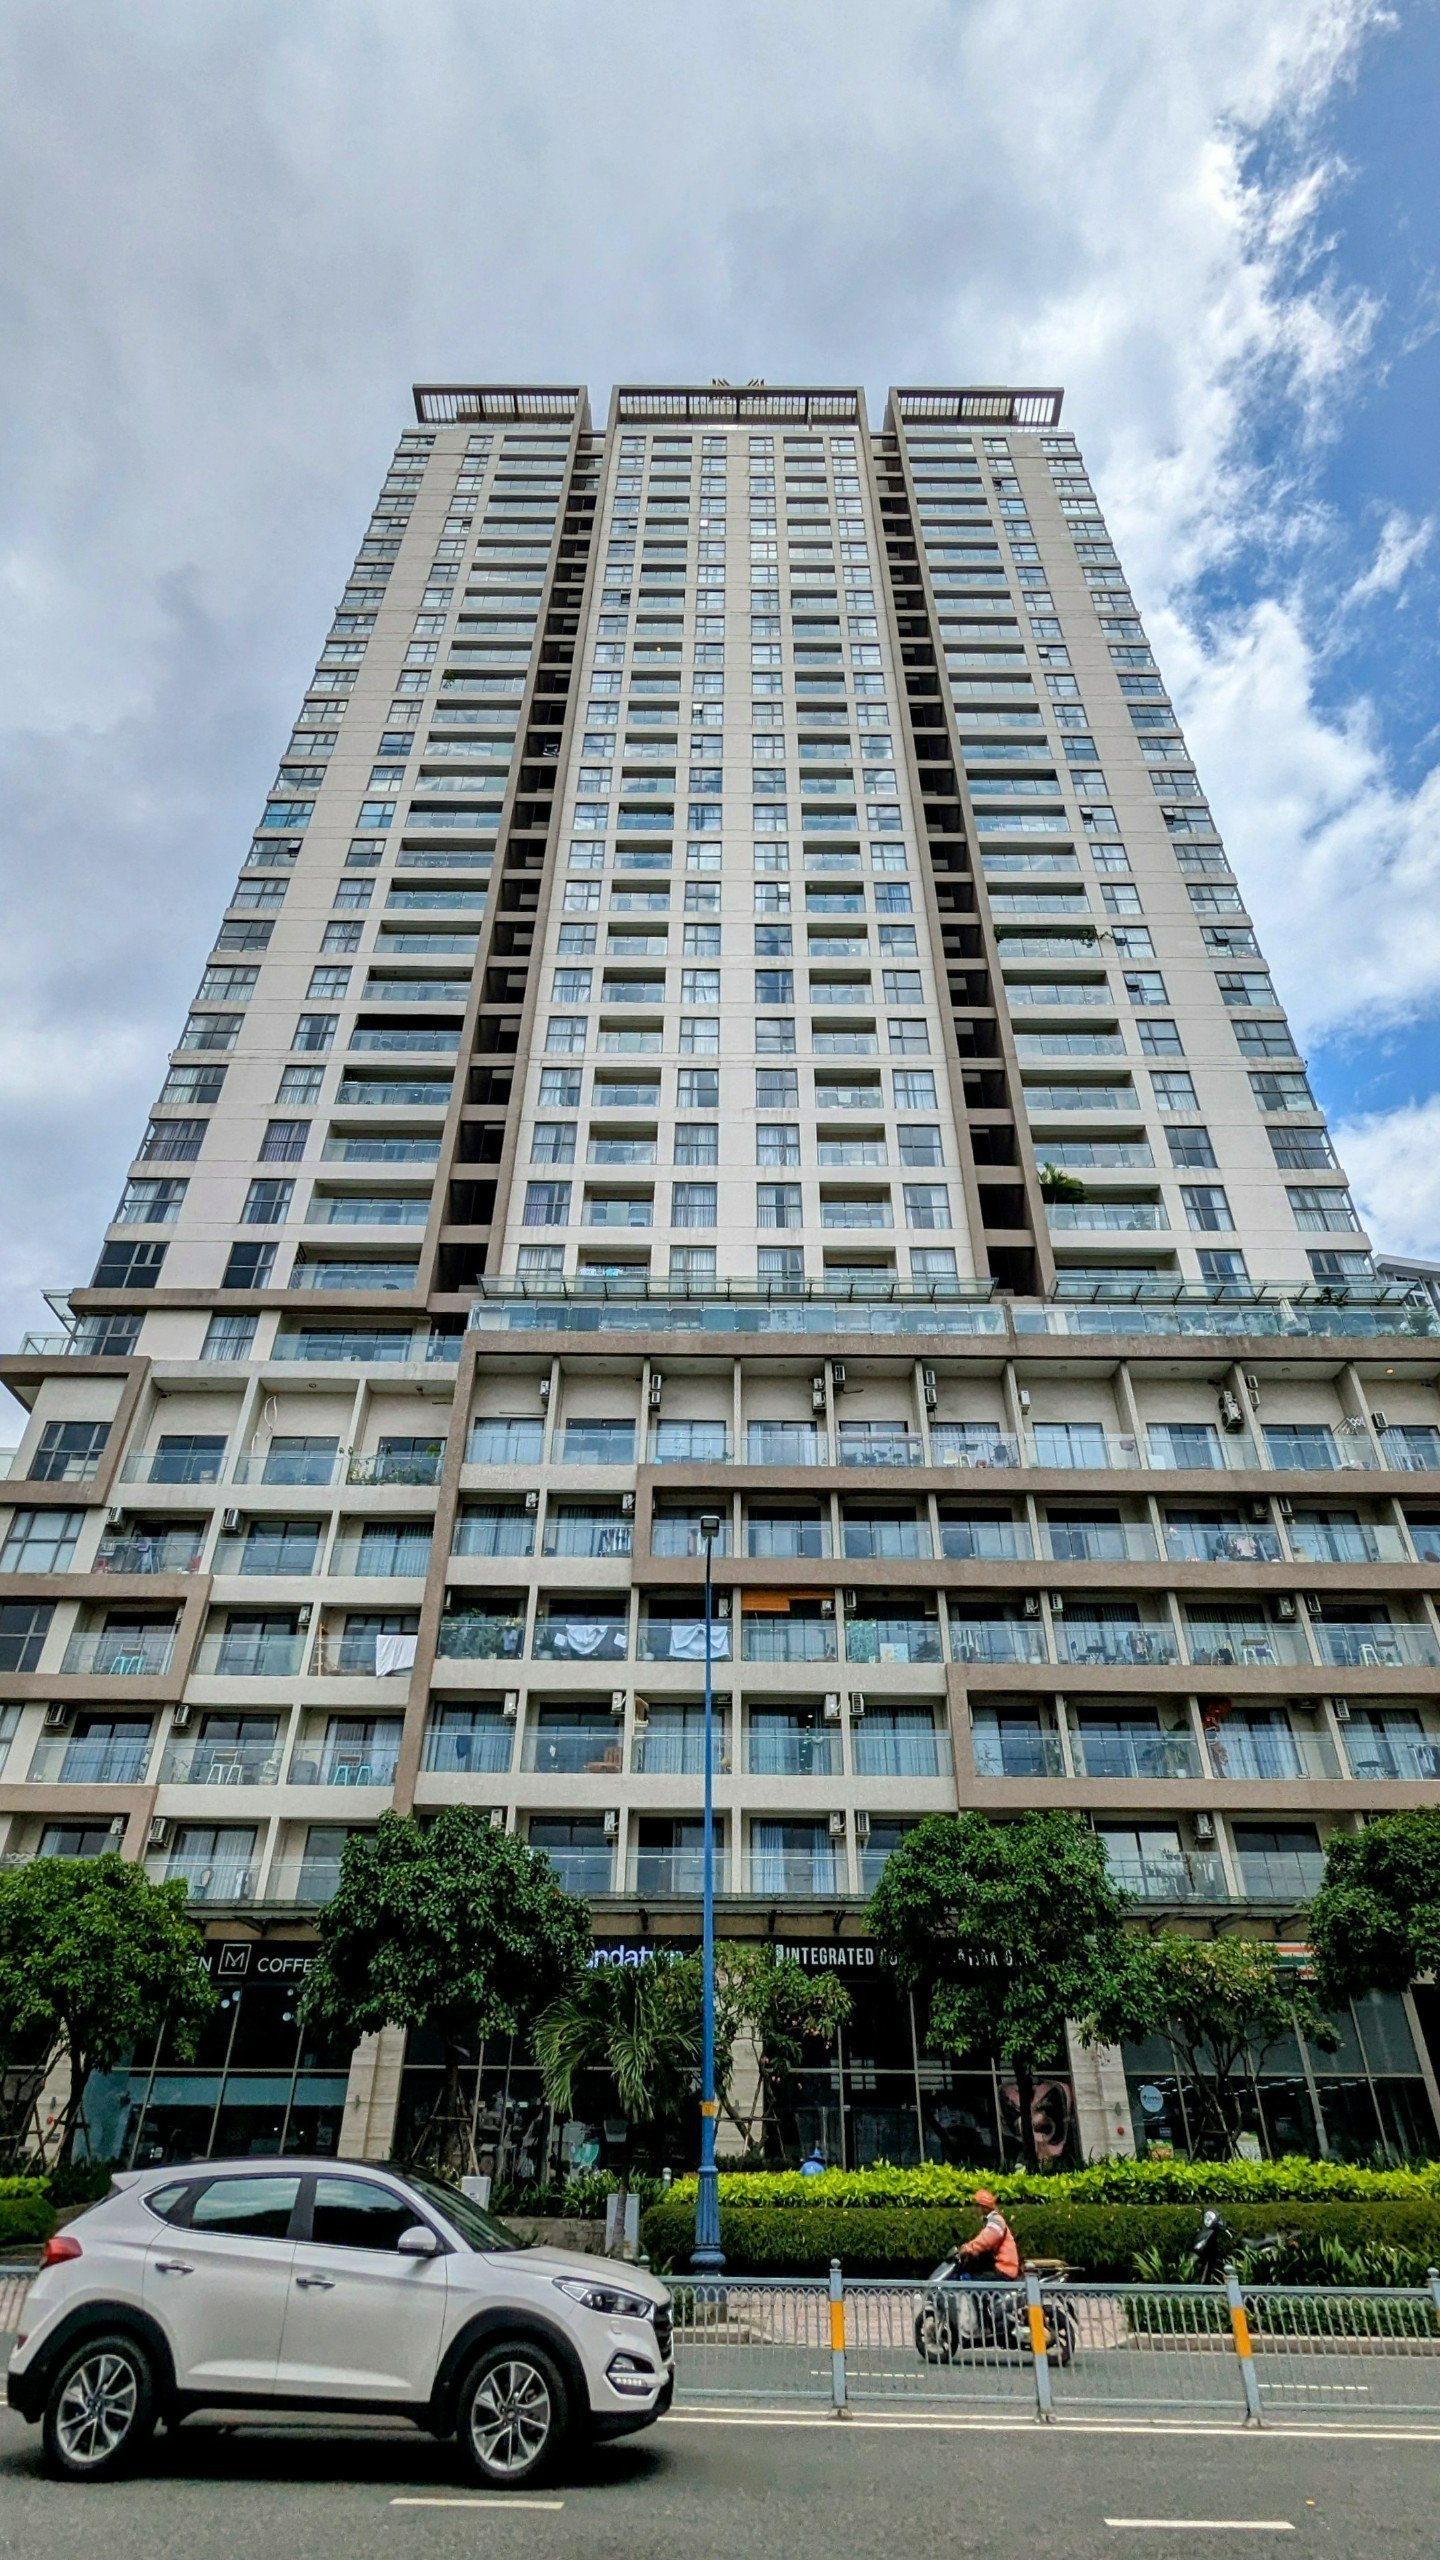 Hiện tòa nhà tháp đôi cao 34 tầng cùng 3 tầng hầm, gồm 650 căn hộ, văn phòng đa năng diện tích 30 - 45m2, shophouse có diện tích 80 - 108m2 hiện đã được hoàn thành, đưa vào sử dụng. Tổng vốn đầu tư xây dựng dự kiến khoảng 2.015 tỉ đồng.  